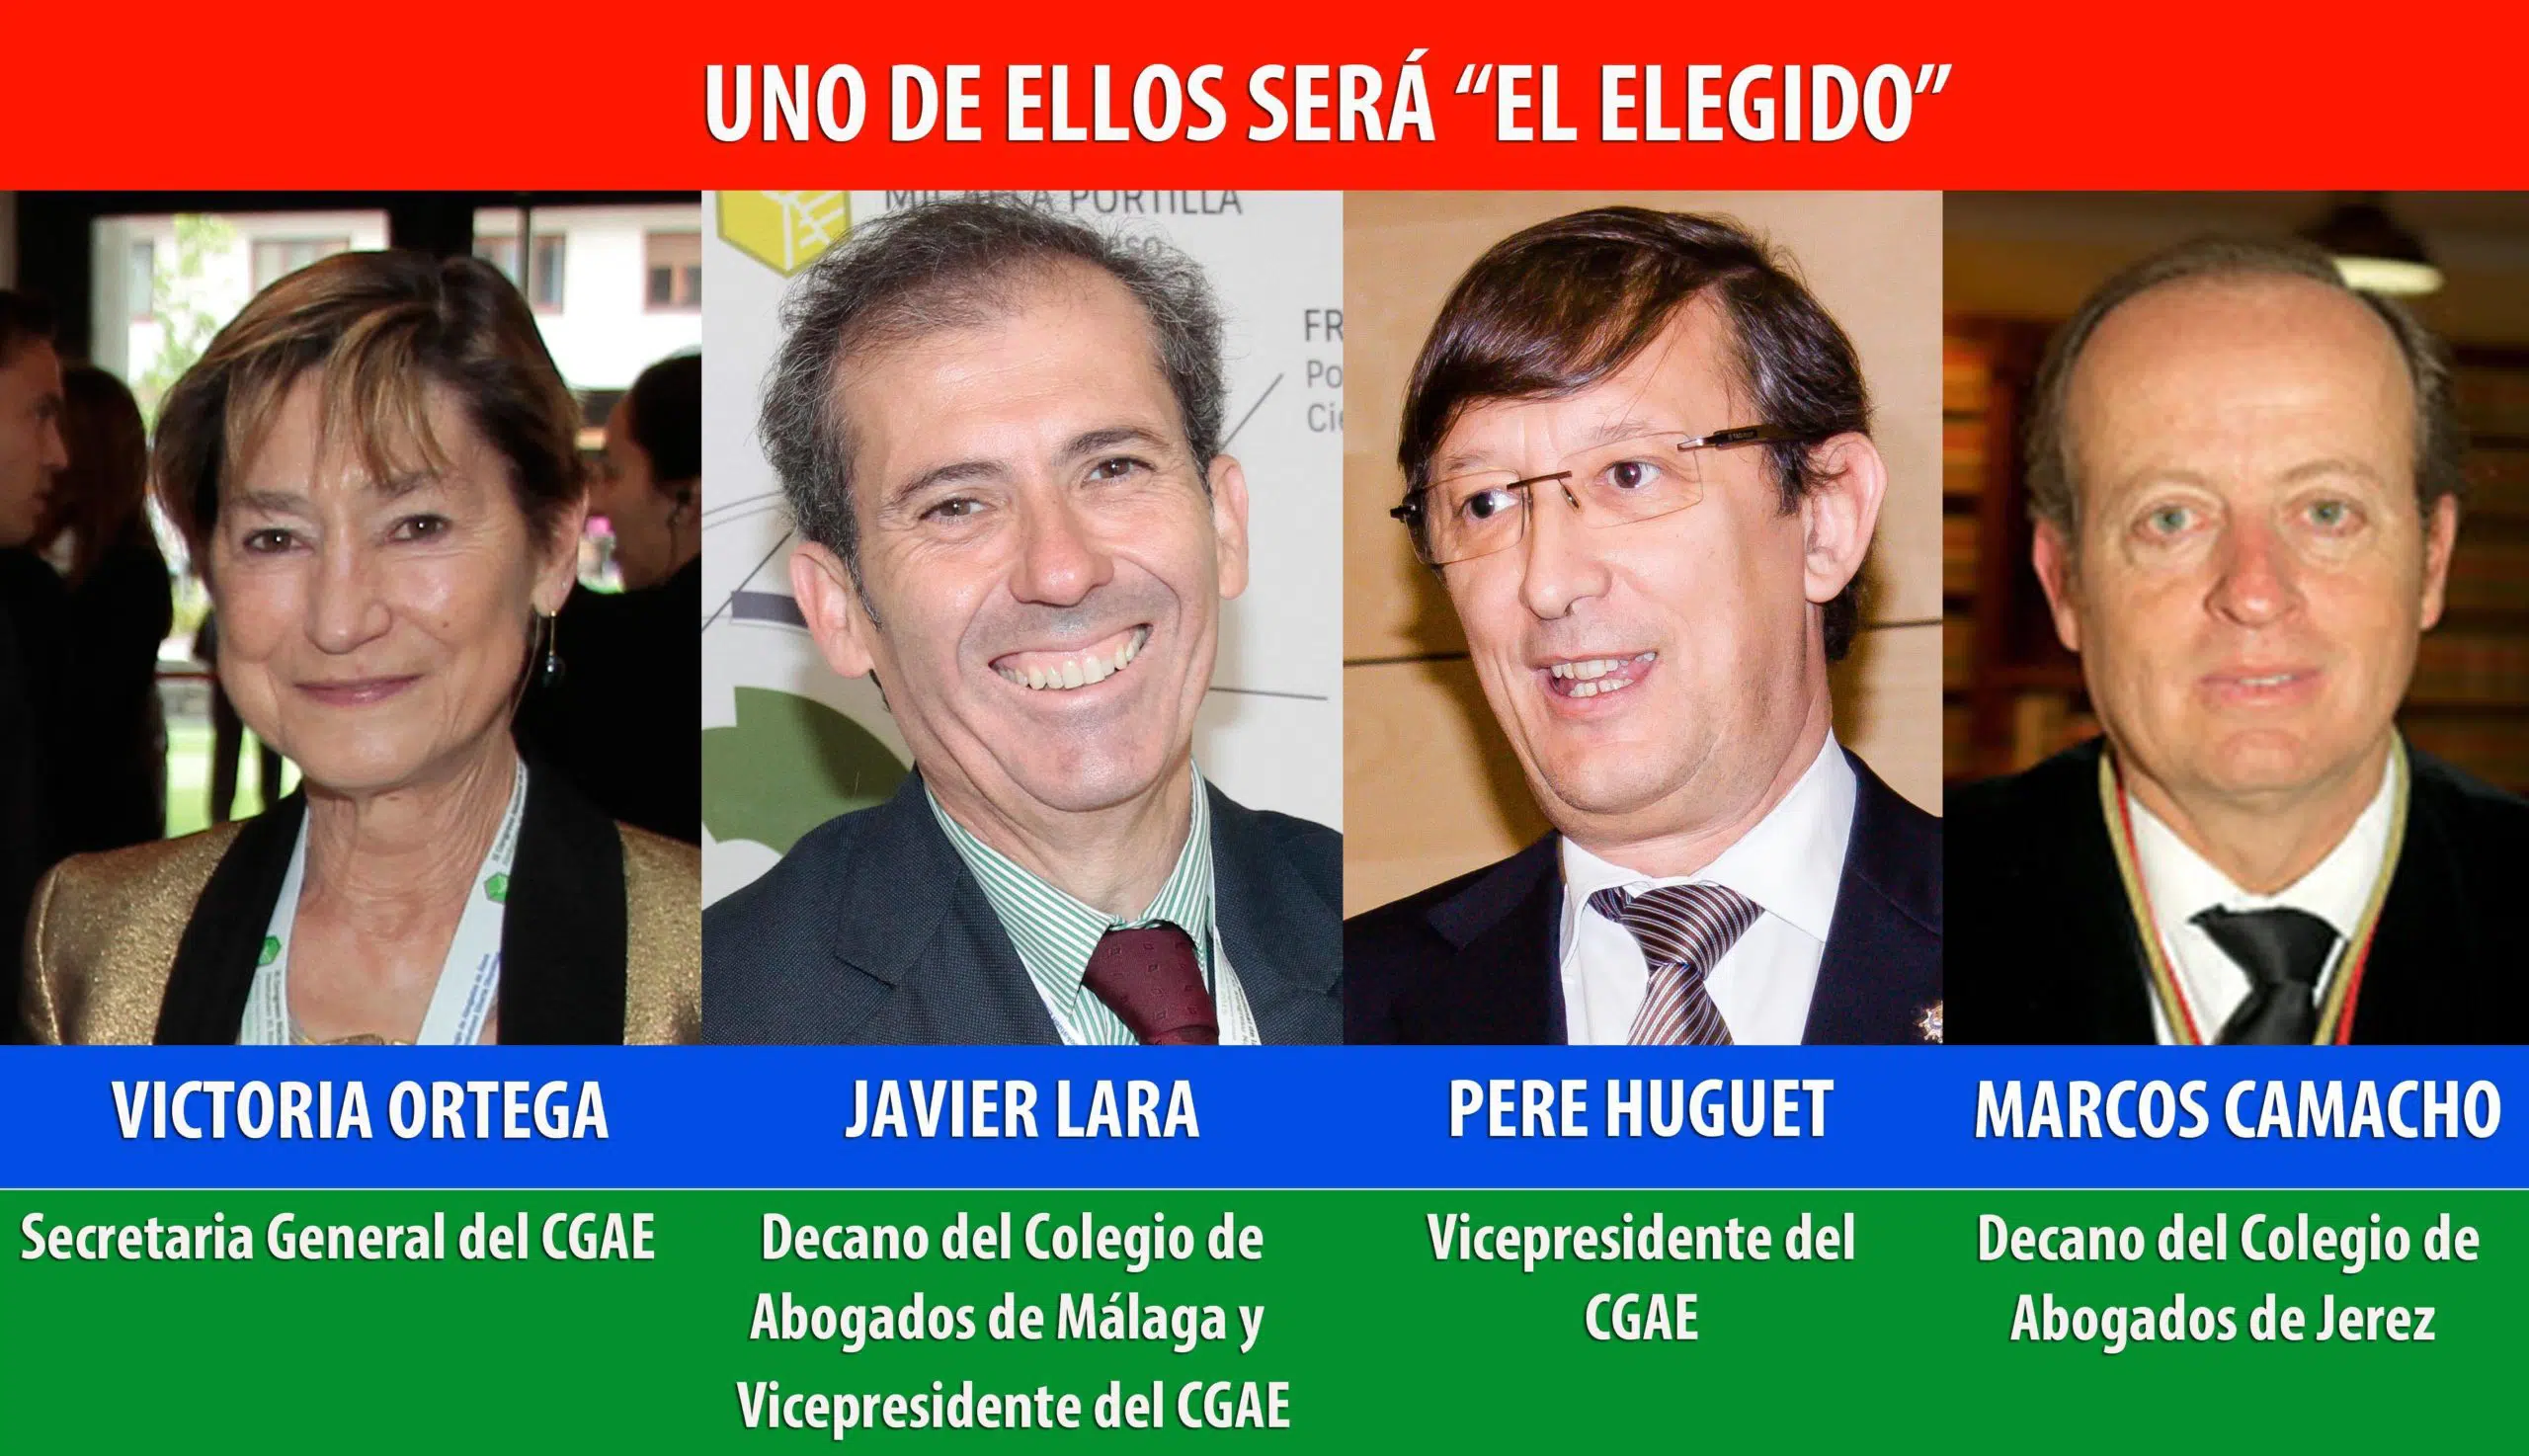 Cuatro candidatos compiten por la Presidencia de la Abogacía Española